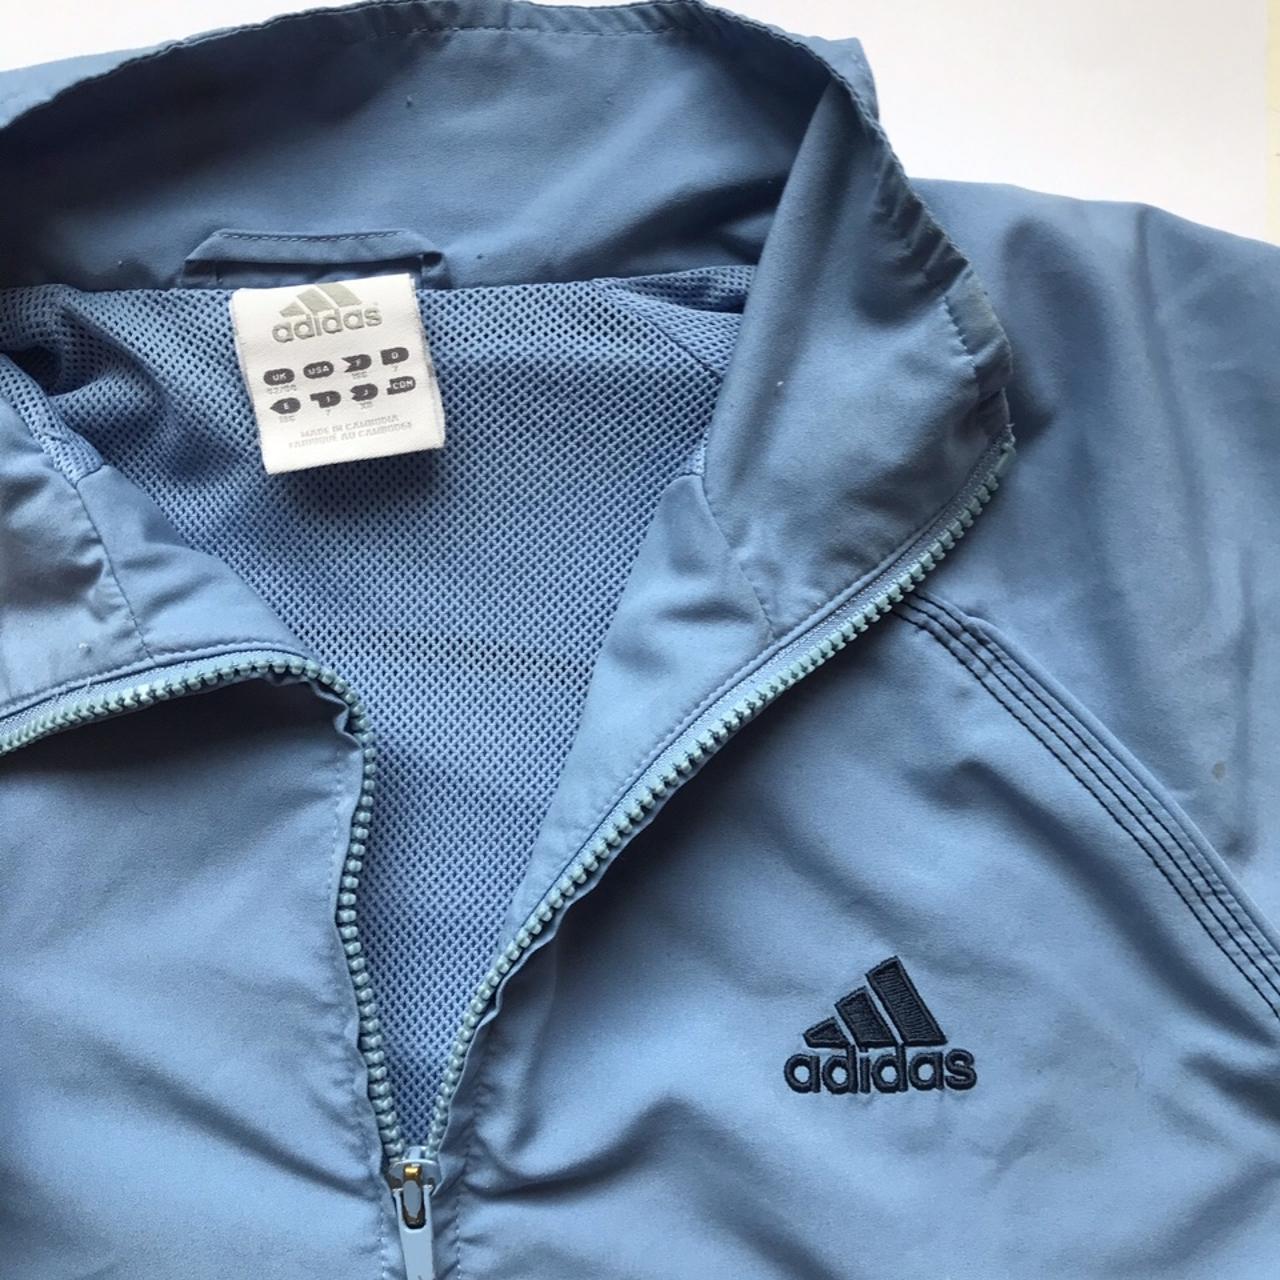 Adidas Men's Blue and Black Jacket | Depop